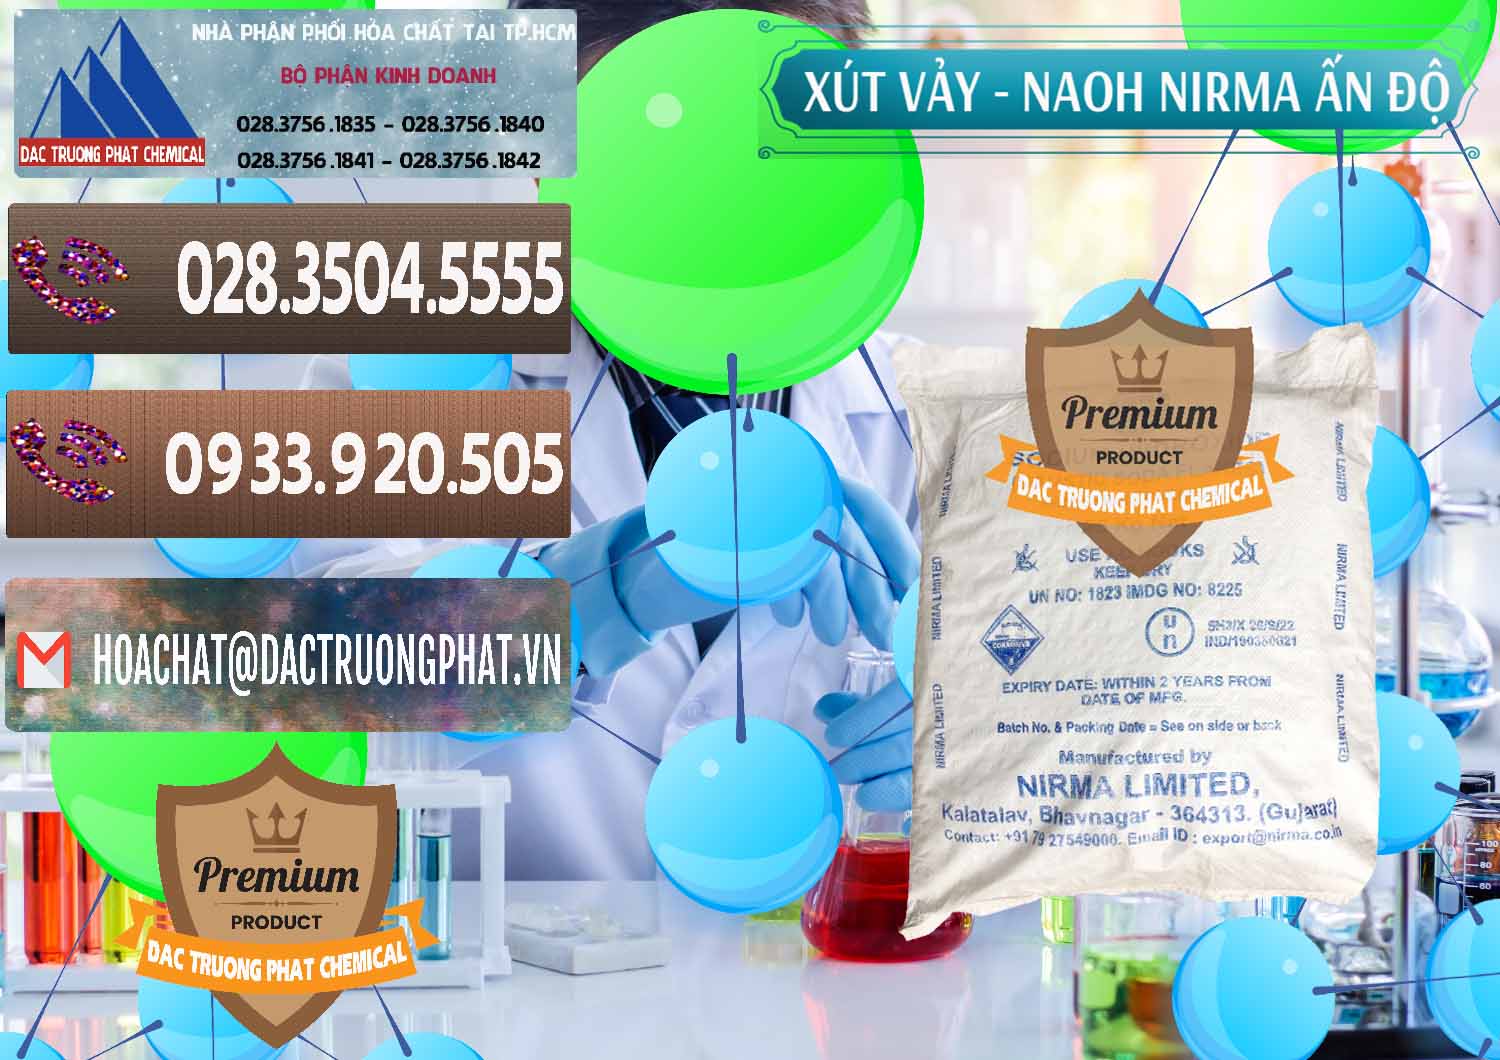 Chuyên cung cấp & bán Xút Vảy - NaOH Vảy Nirma Ấn Độ India - 0371 - Cty chuyên phân phối _ bán hóa chất tại TP.HCM - hoachatviet.net